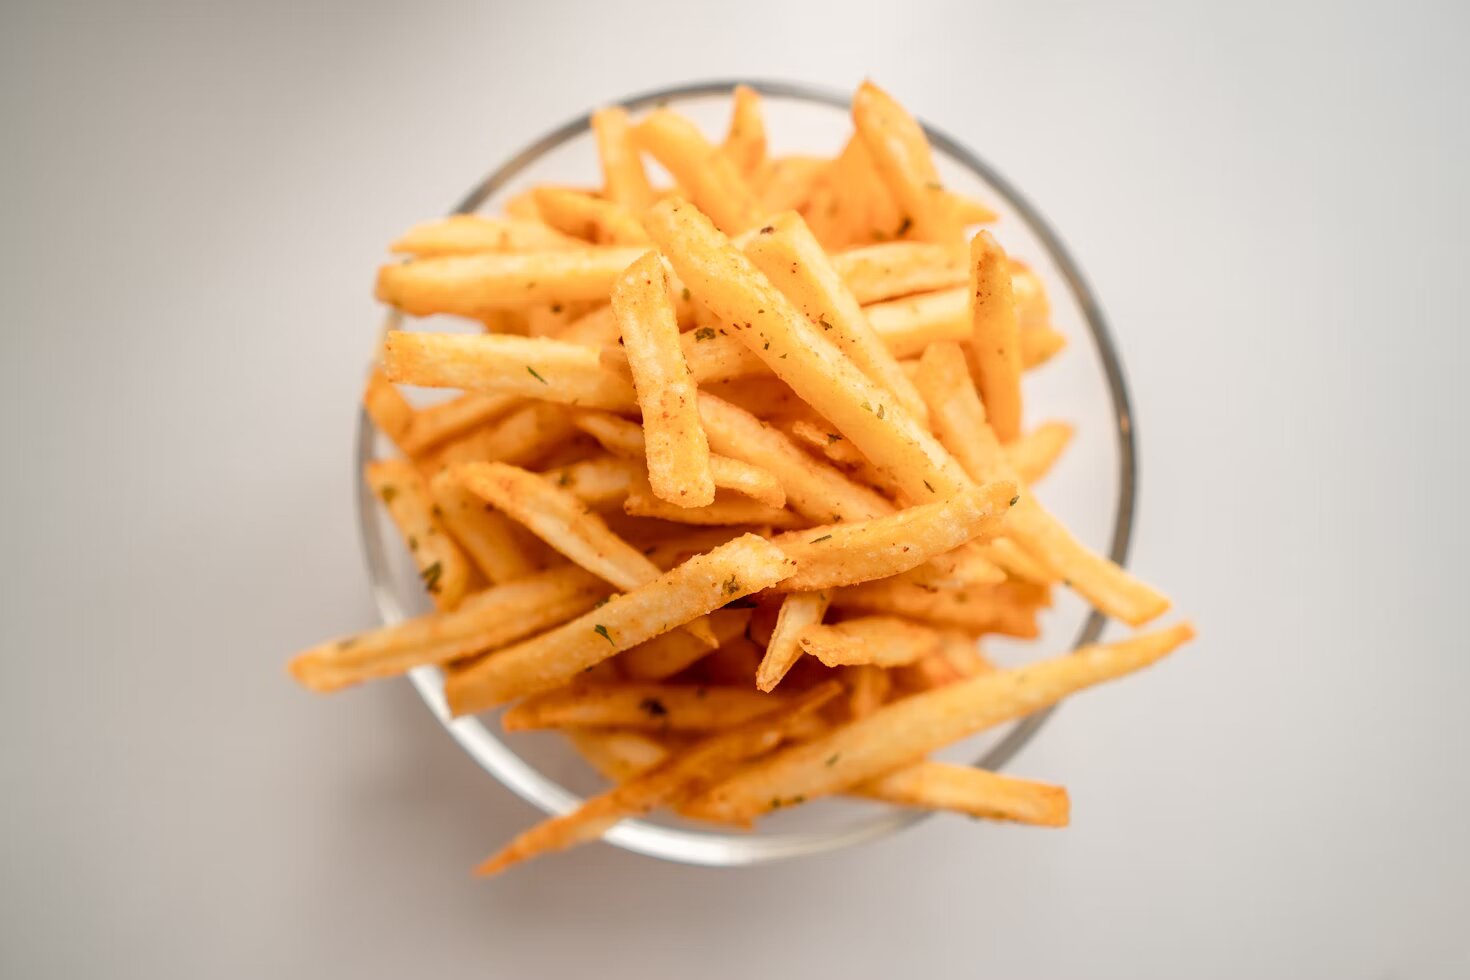 Японское подразделение McDonald's выпустит духи с ароматом картофеля фри